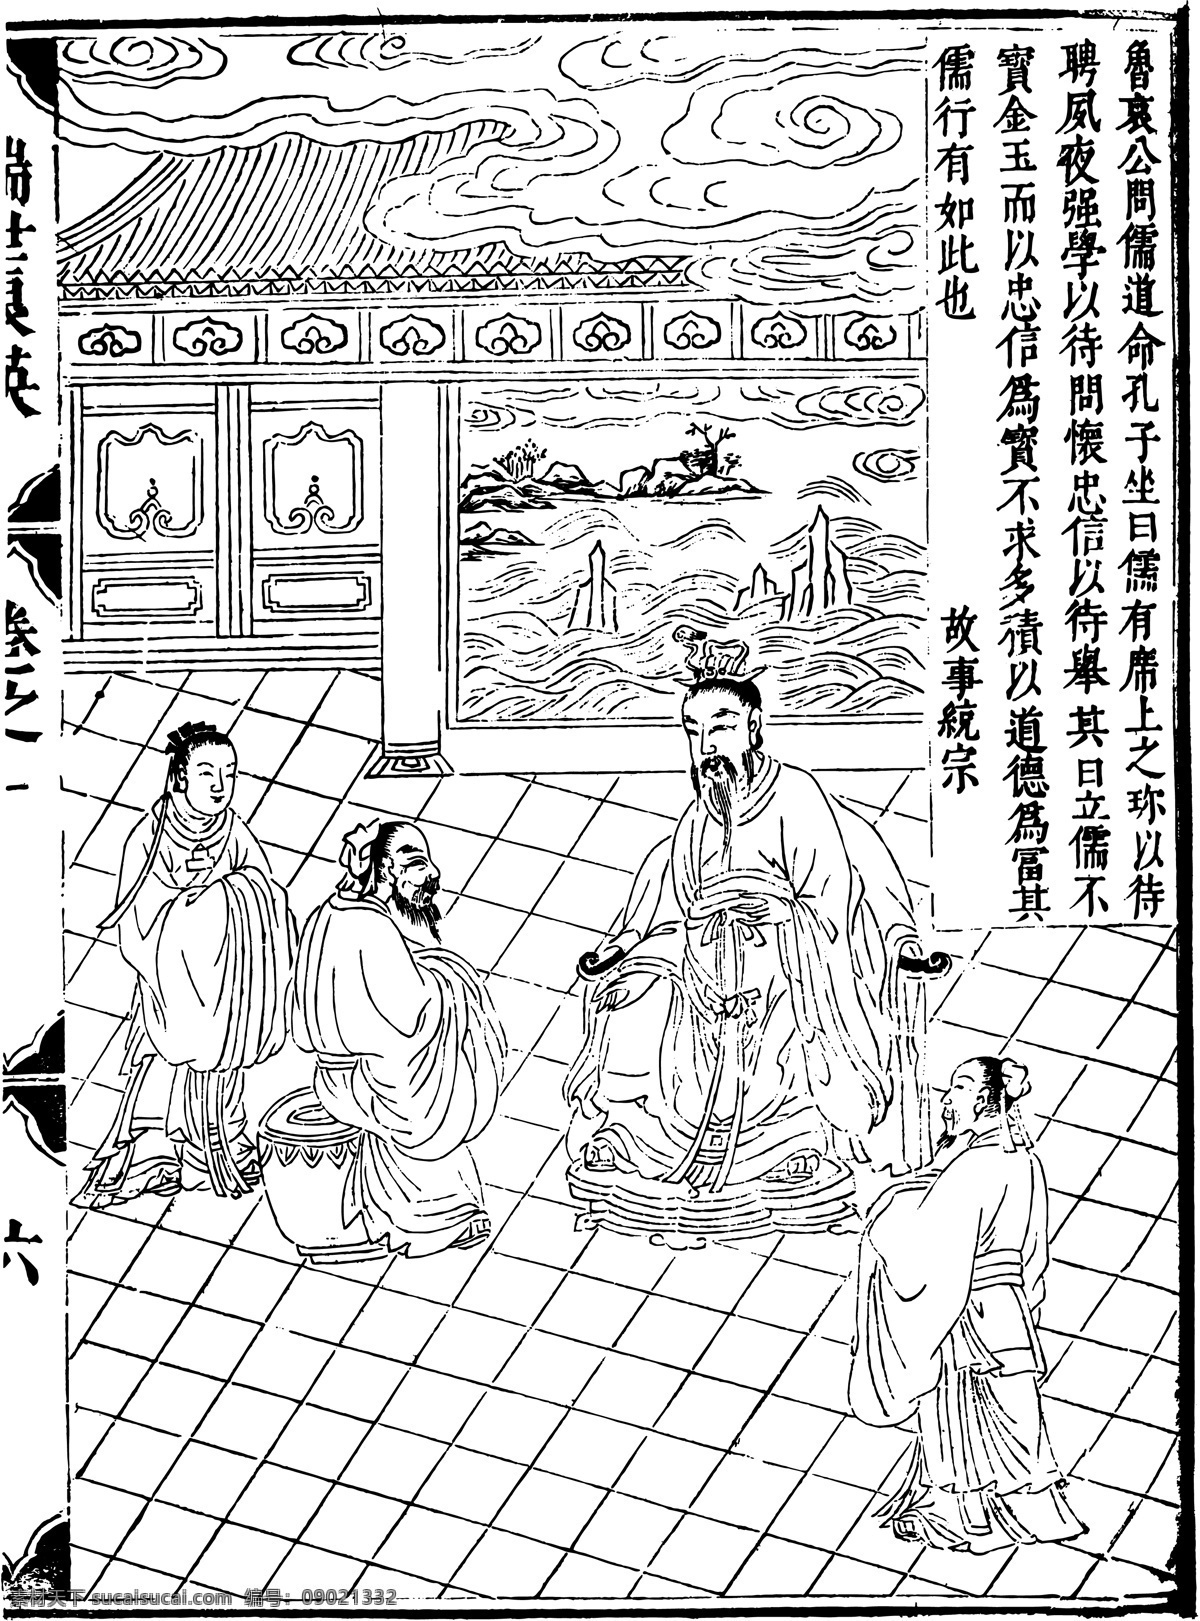 瑞世良英 木刻版画 中国 传统文化 31 中国传统文化 设计素材 版画世界 书画美术 白色